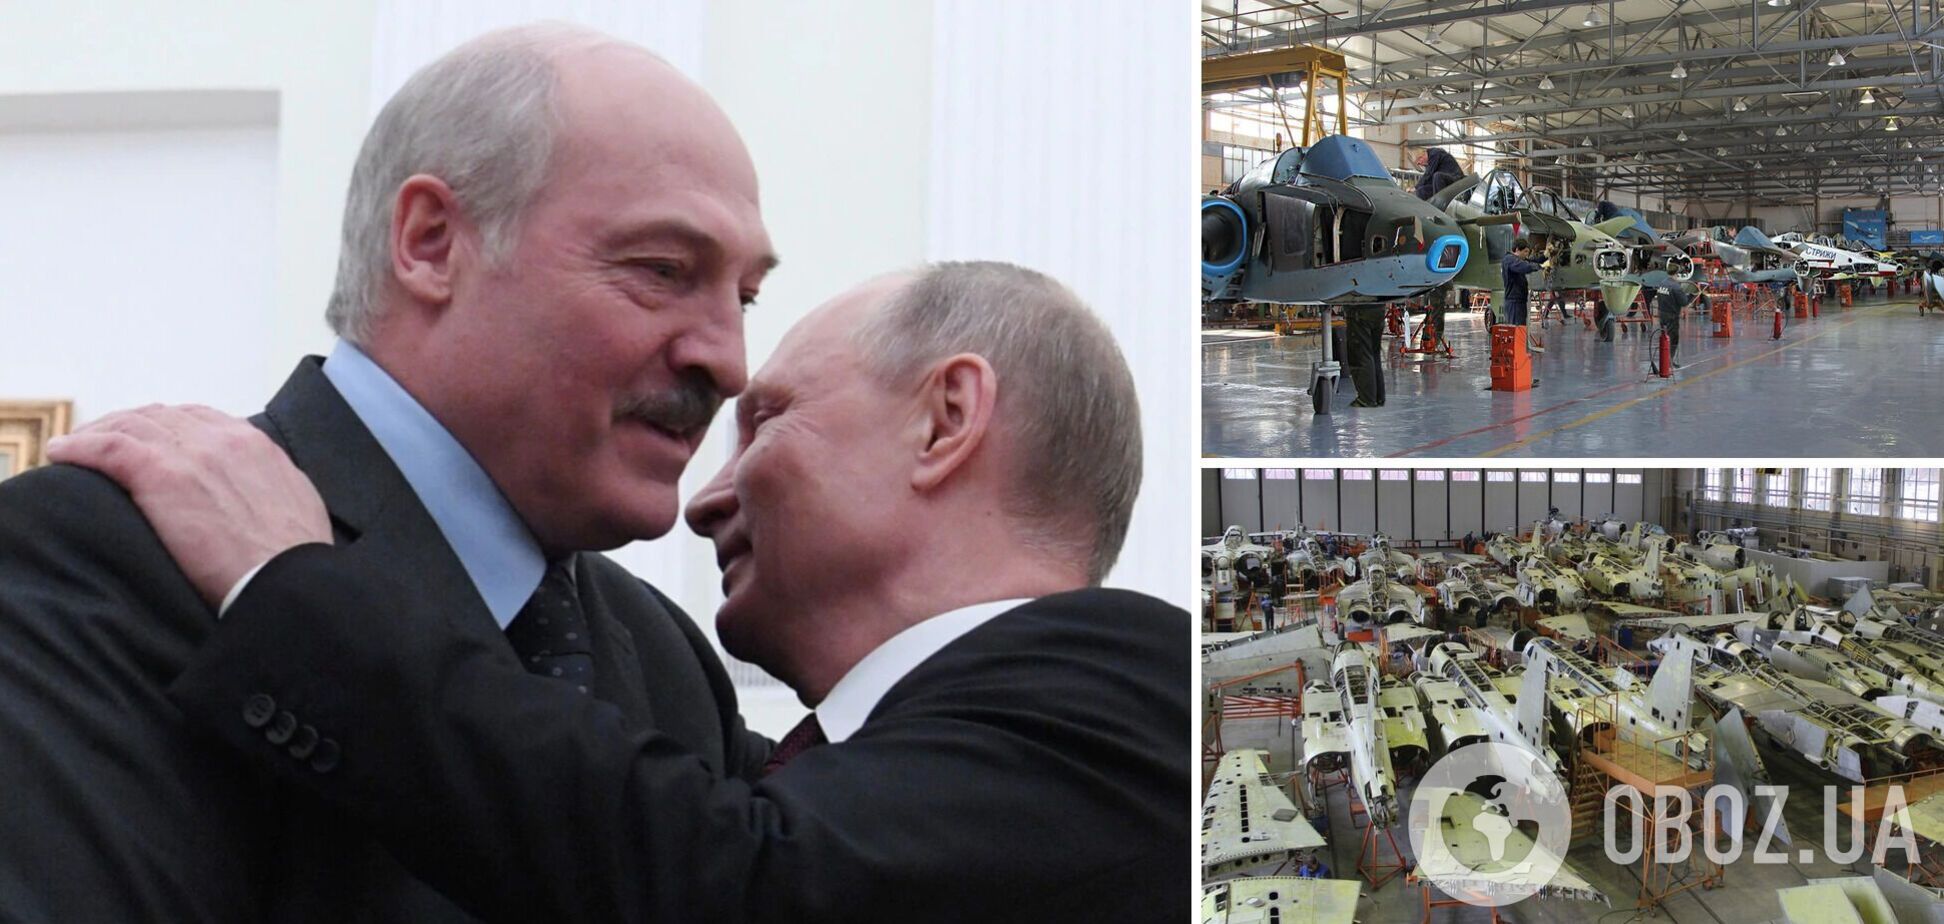 Росія хоче отримати контроль над білоруським оборонпромом: стало відомо, про що говорив Шойгу під час візиту до Мінська  